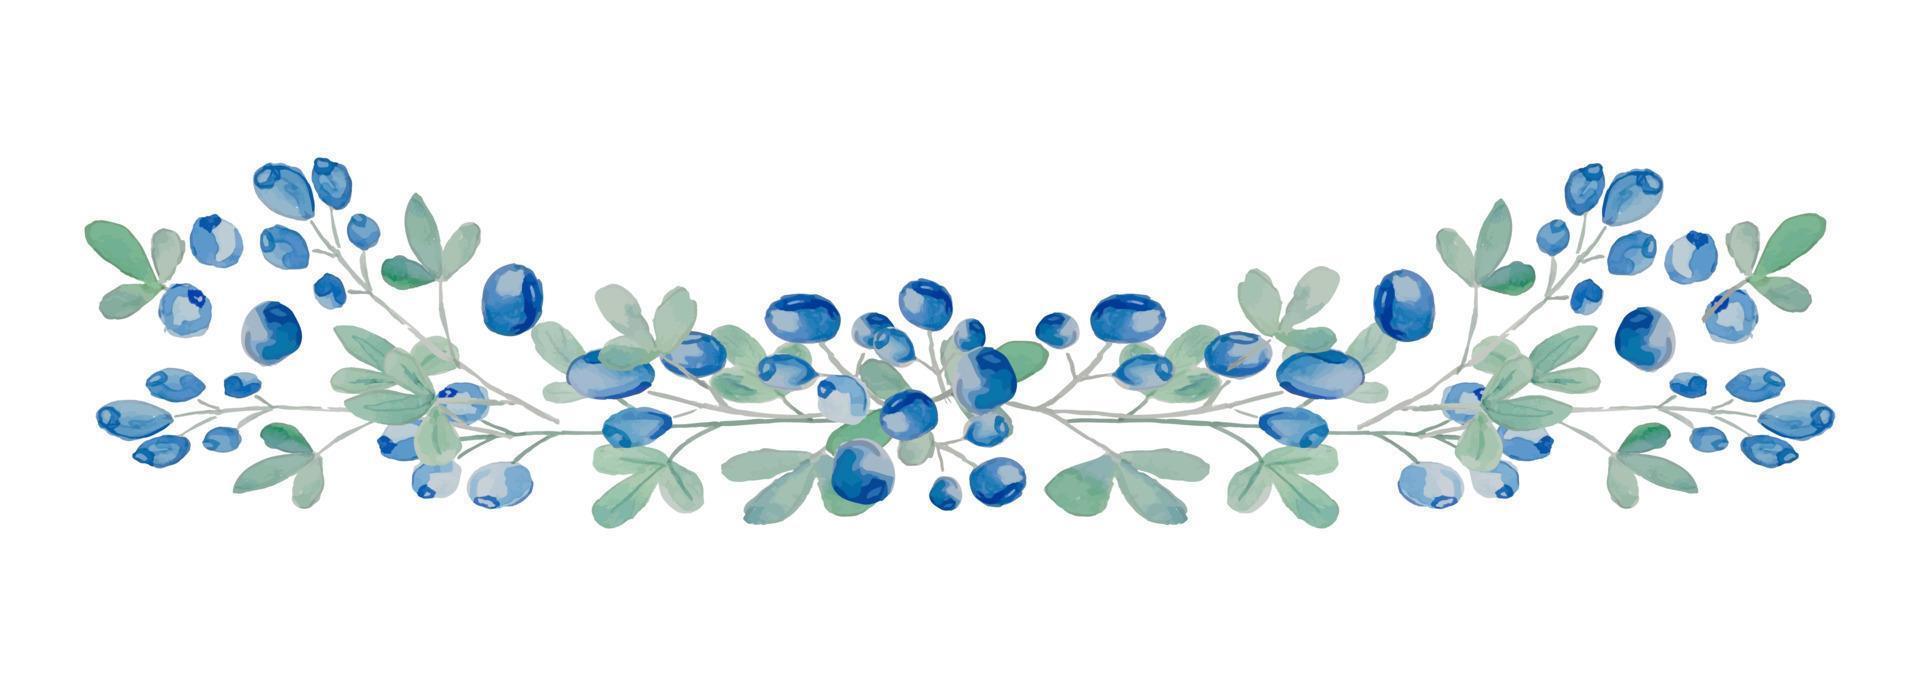 vektor vattenfärg blåbär horisontell gren på vit bakgrund